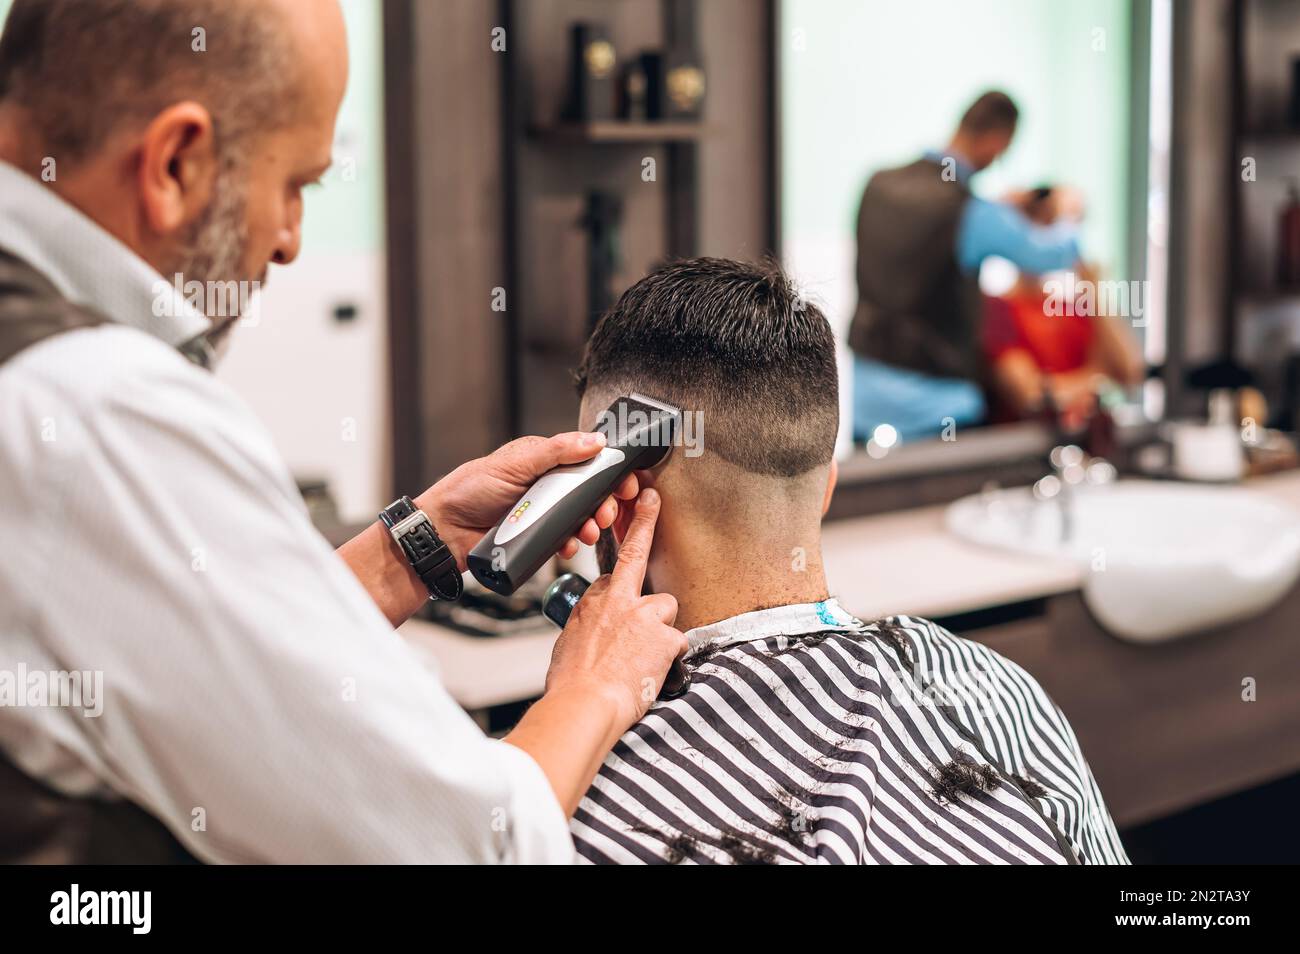 Vista posterior de la cosecha de peluquero recortando el pelo oscuro del cliente masculino en barbería moderna durante el día de trabajo Foto de stock